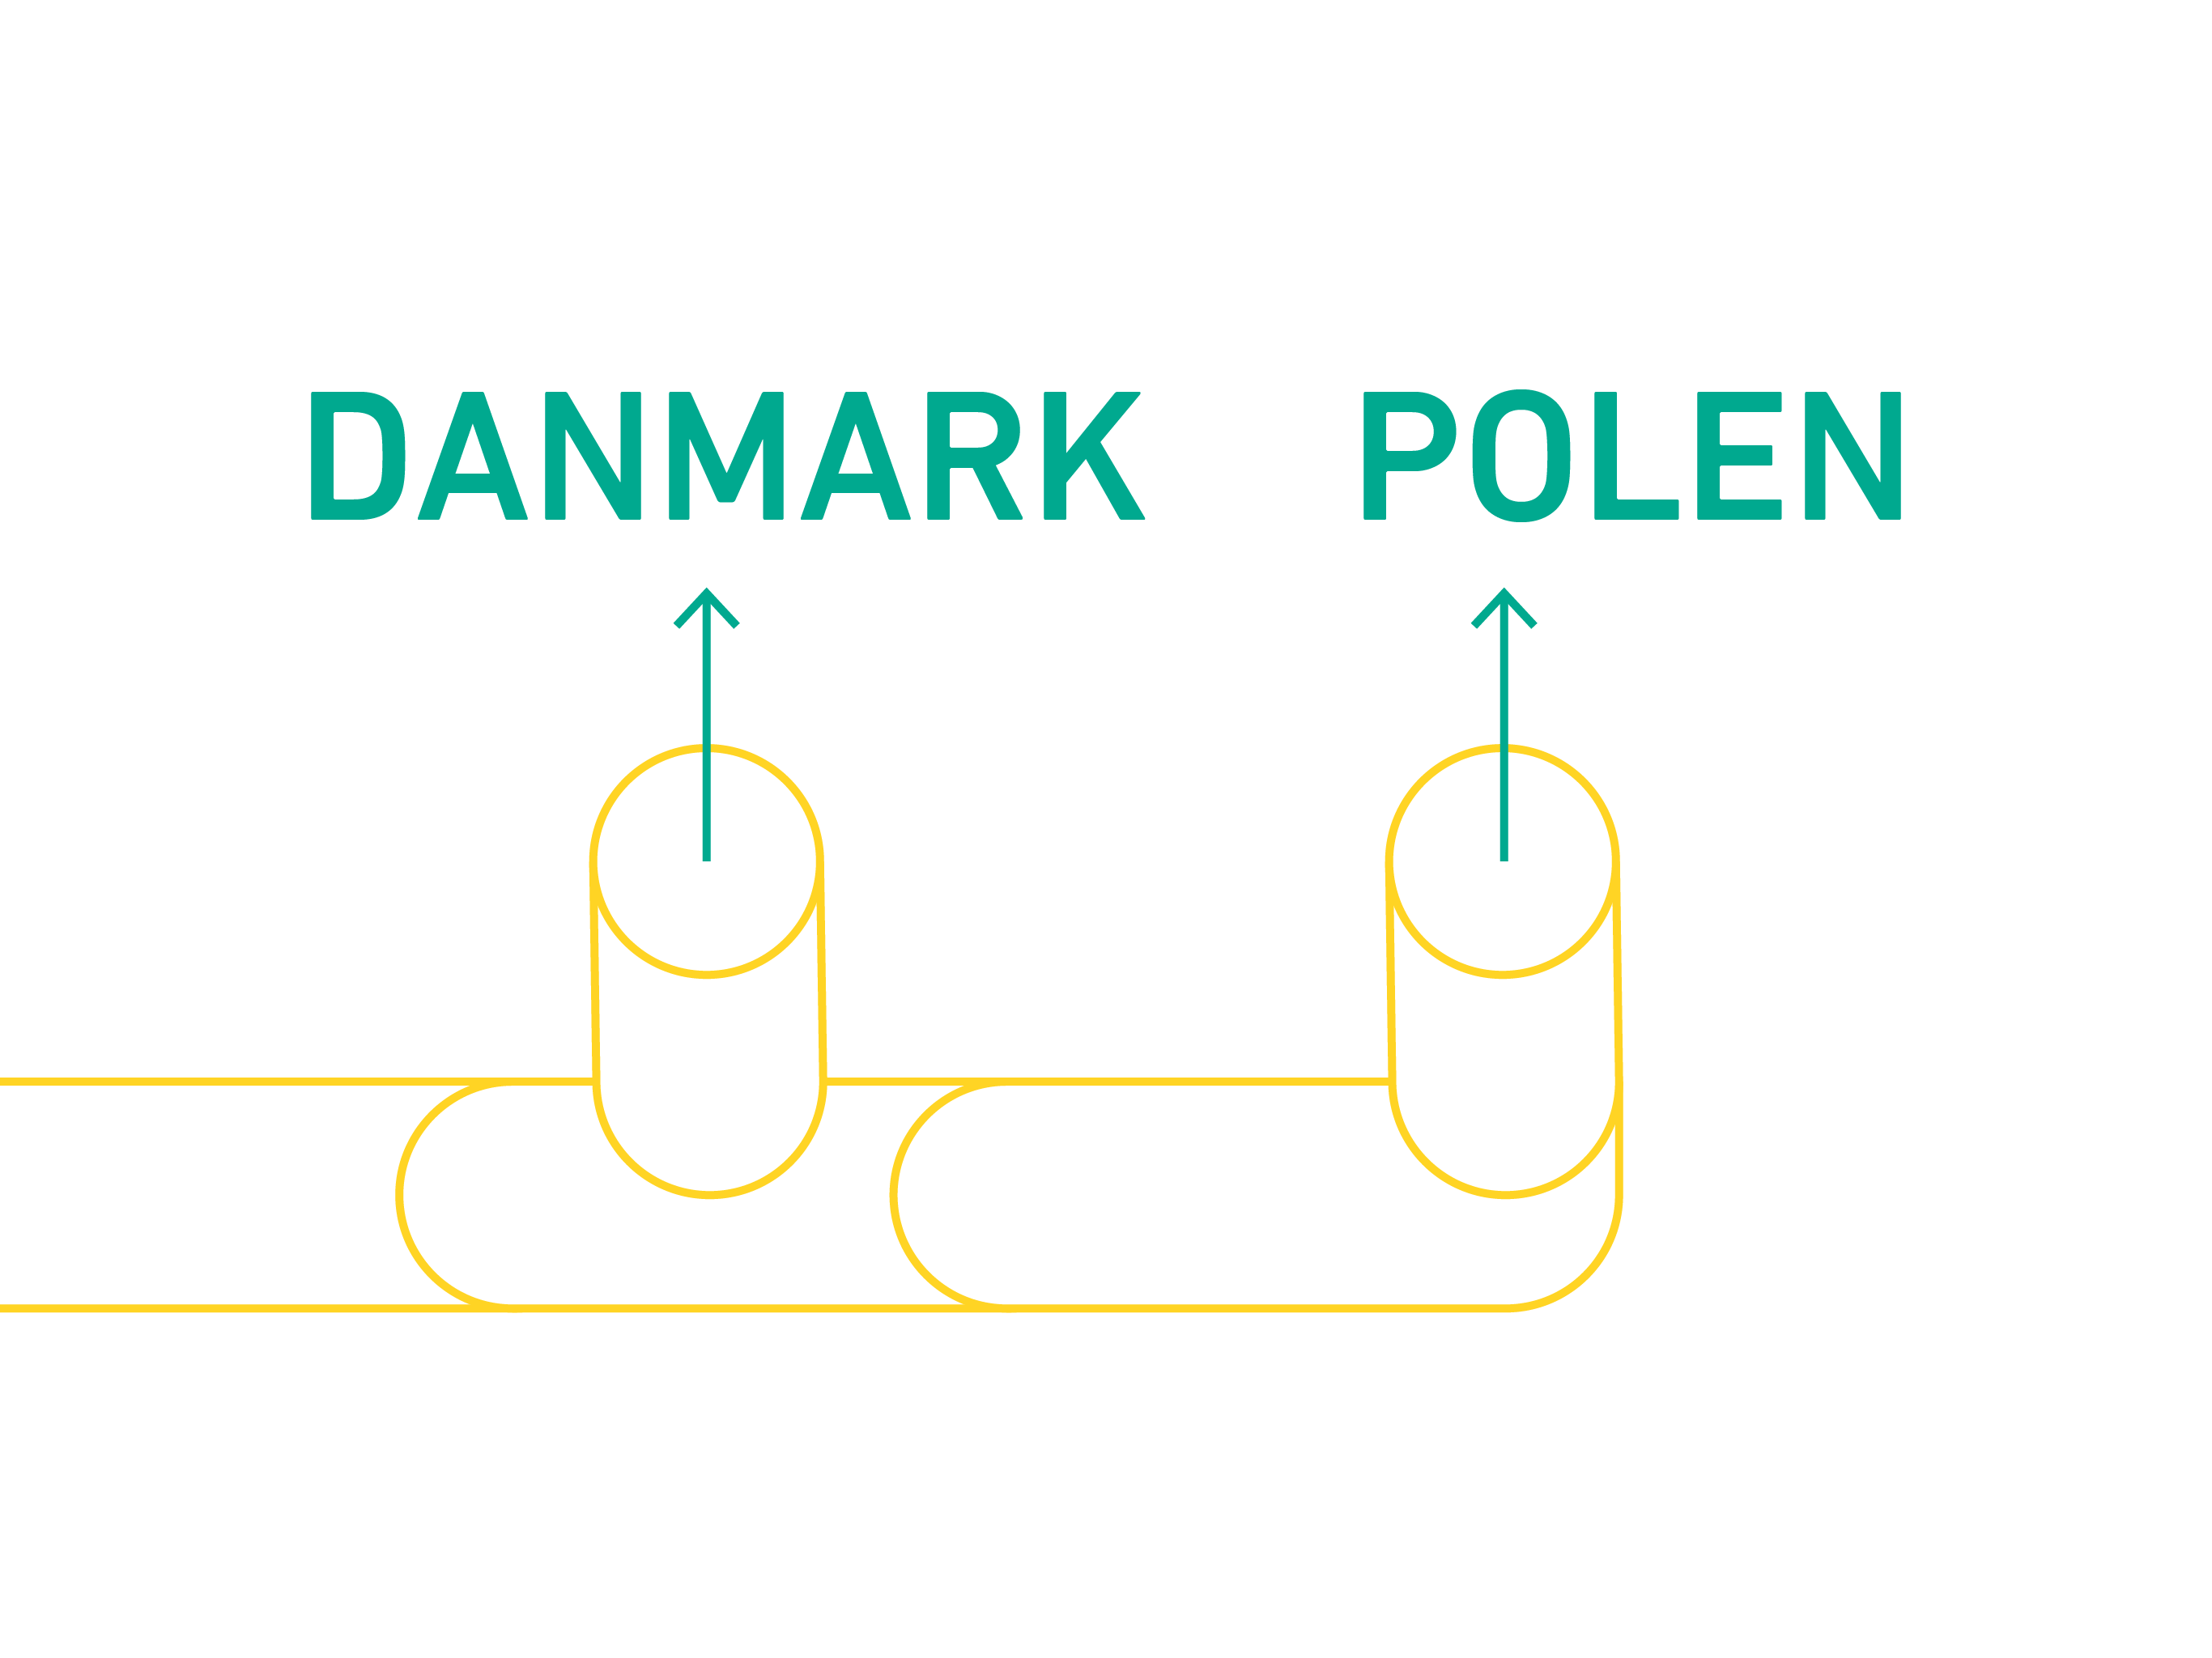 Baltic Pipe giver større forsyningssikkerhed i Danmark og i Polen.